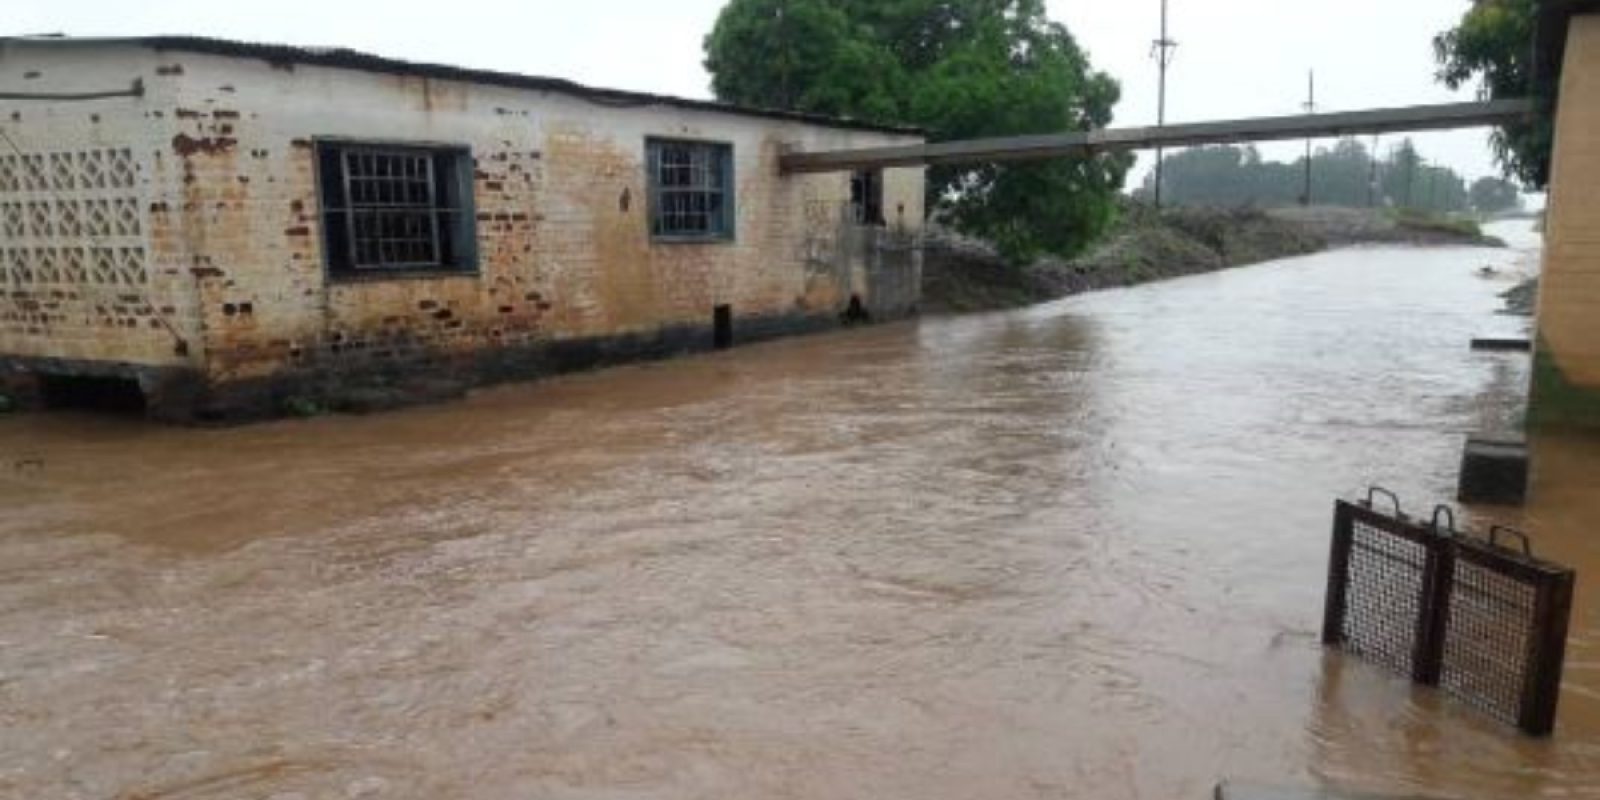 Inundaciones alrededor de un edificio en el campamento de Tongogara en Zimbabue. (Servicio Jesuita a Refugiados)